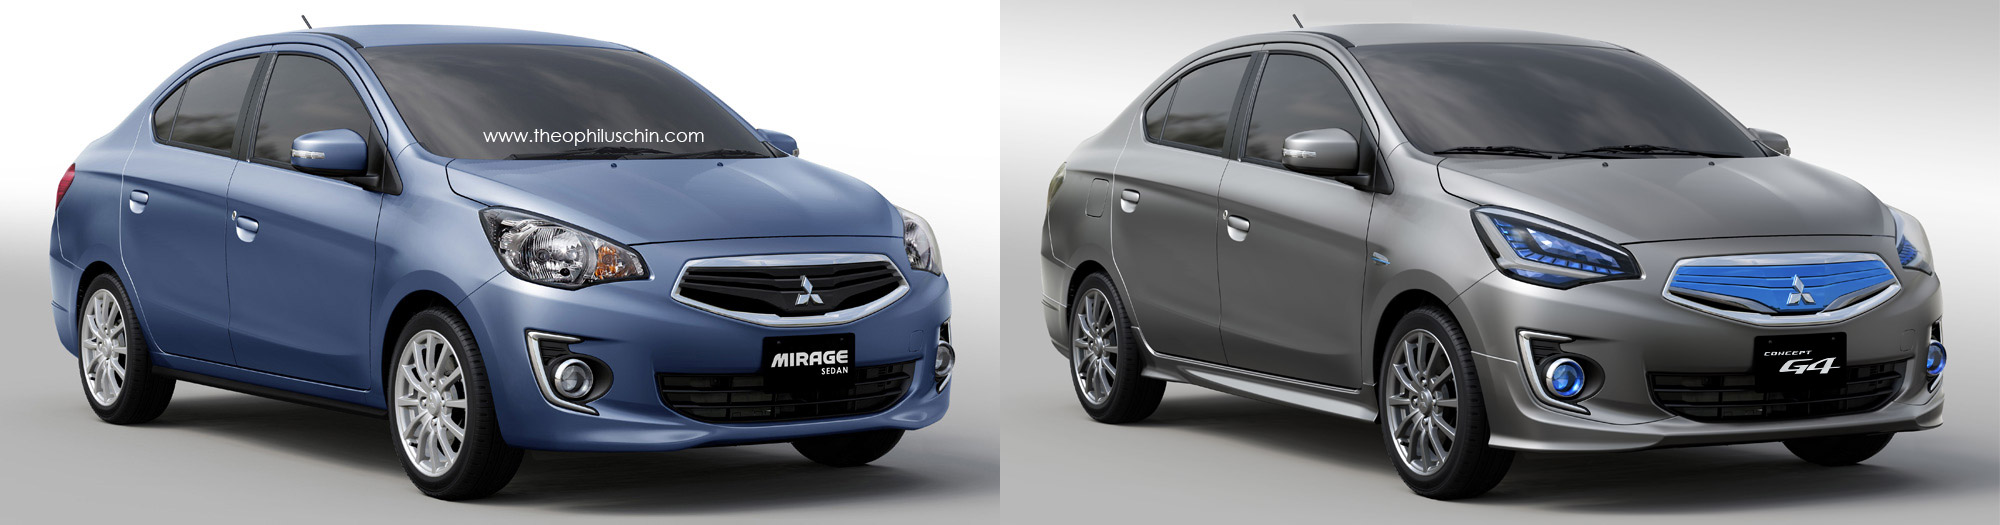 Berita, Perbandingan Mitsubishi Mirage sedan dengan Mitsubishi G4 Concept tampak depan: Dengan Bantuan Digital Imaging, Kemunculan Mitsubishi ‘Mirage Sedan’ Mendekati Kenyataan